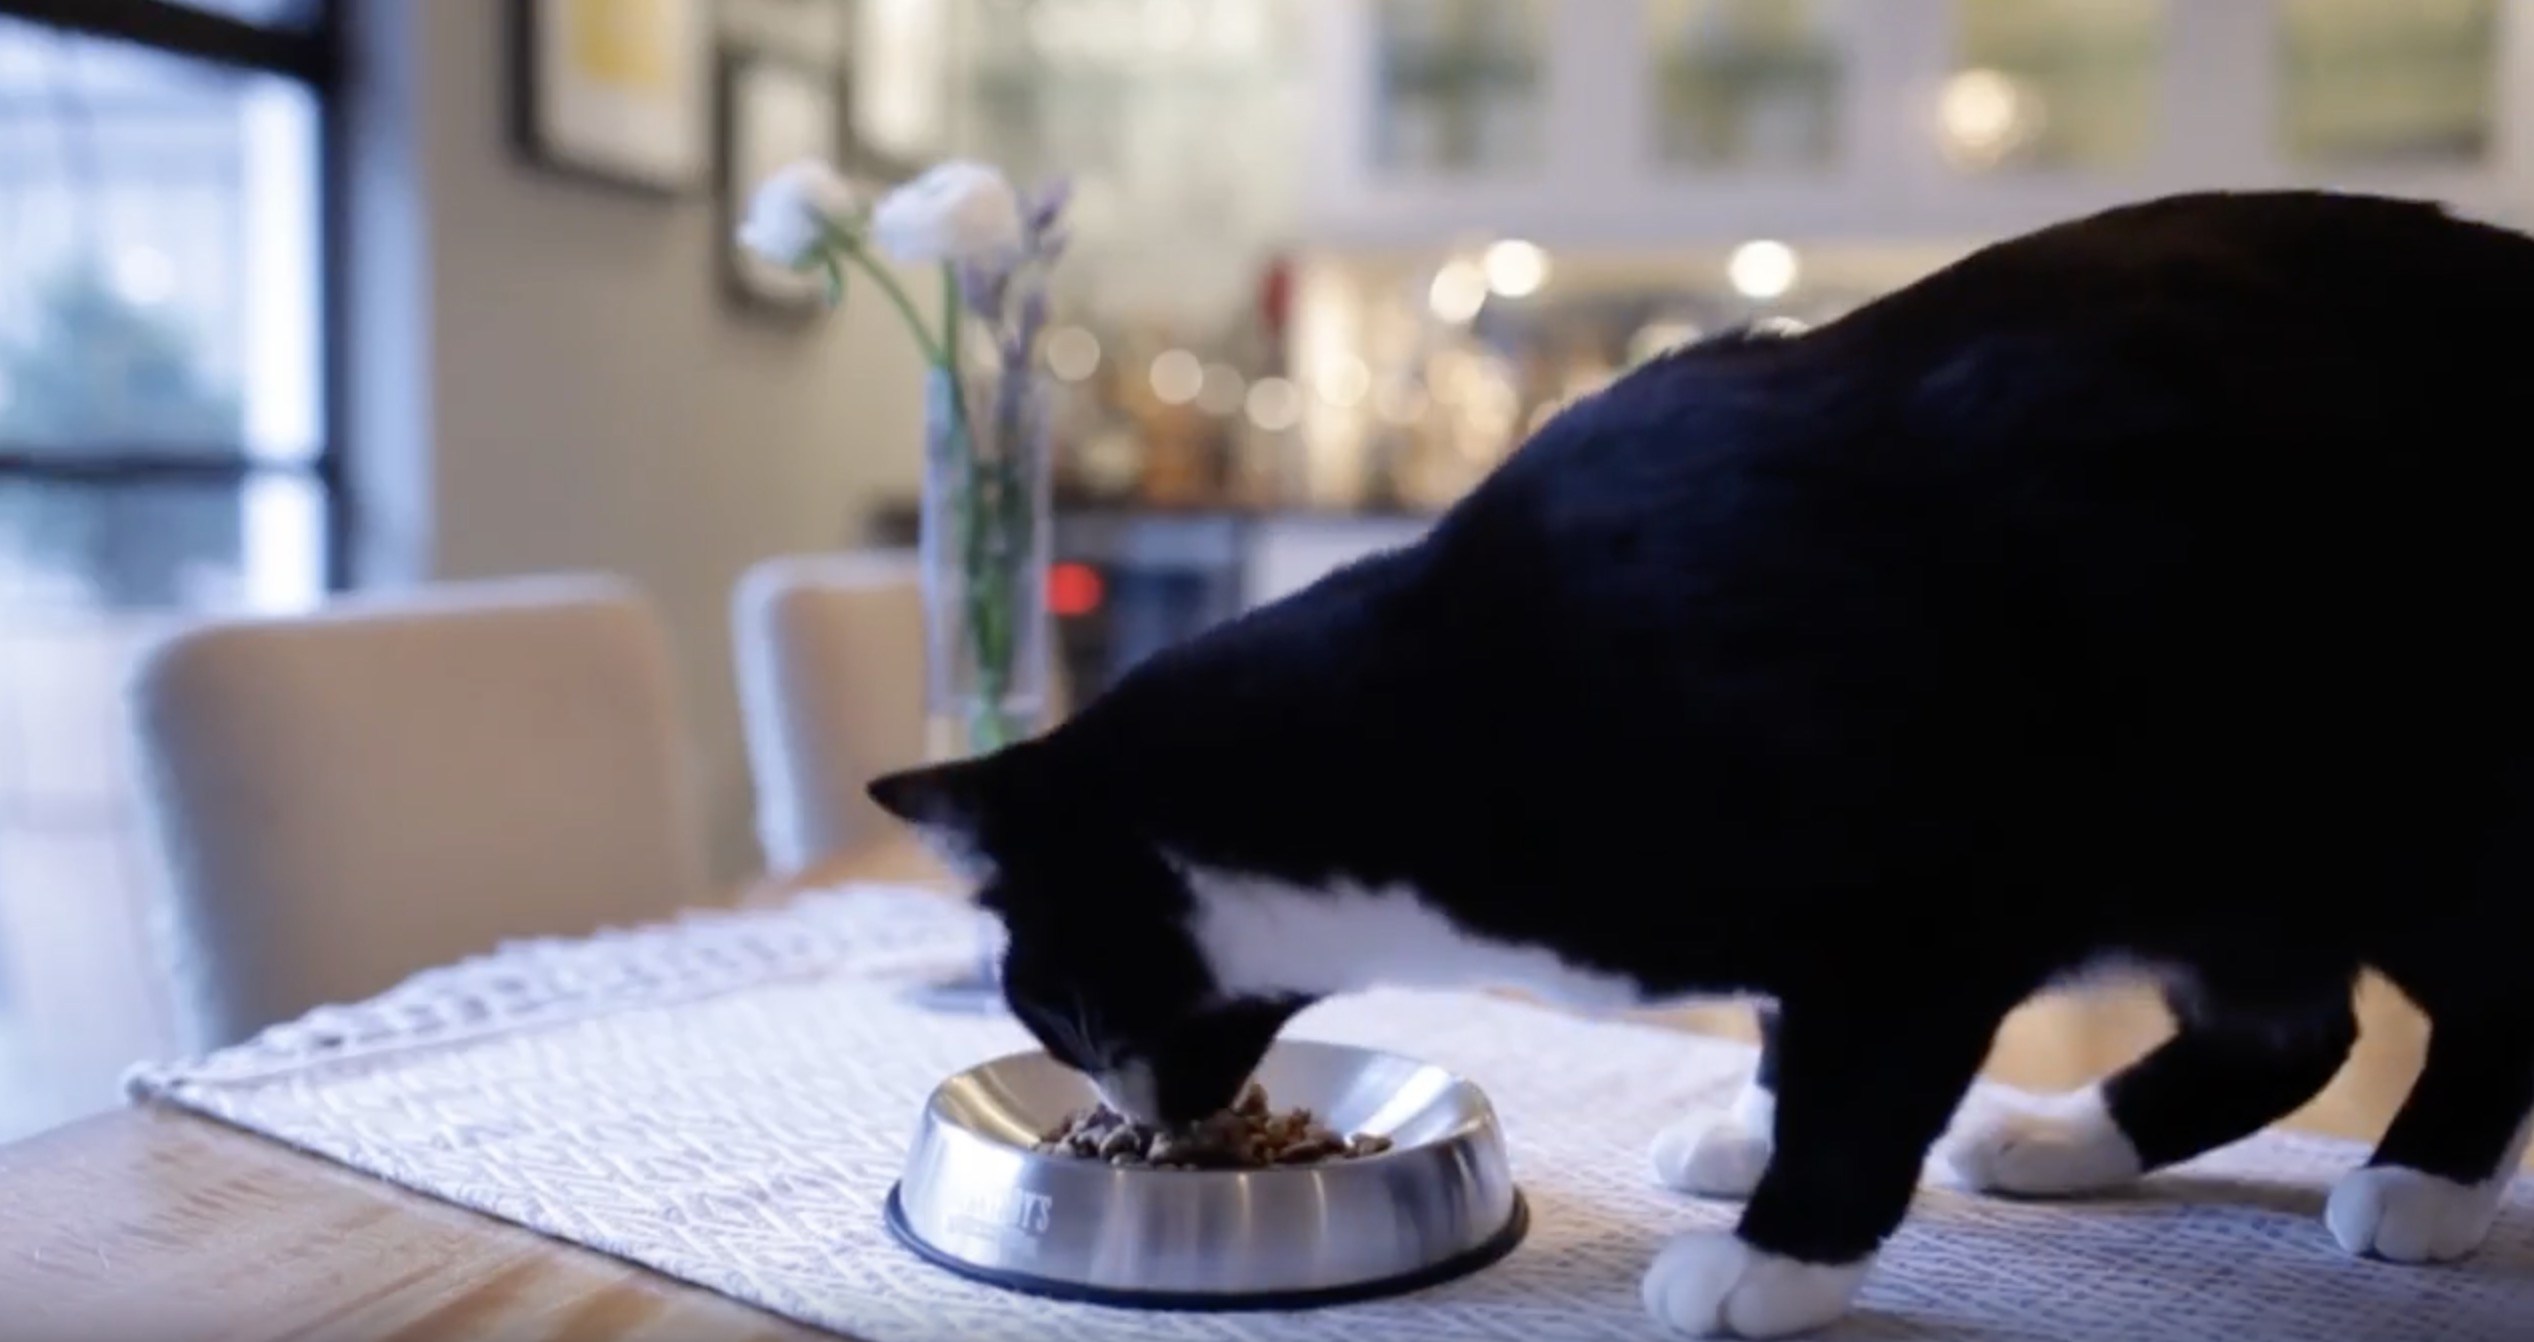 食事中の”ヒゲ倦怠感”を軽減する、絶妙なカーブの猫食器